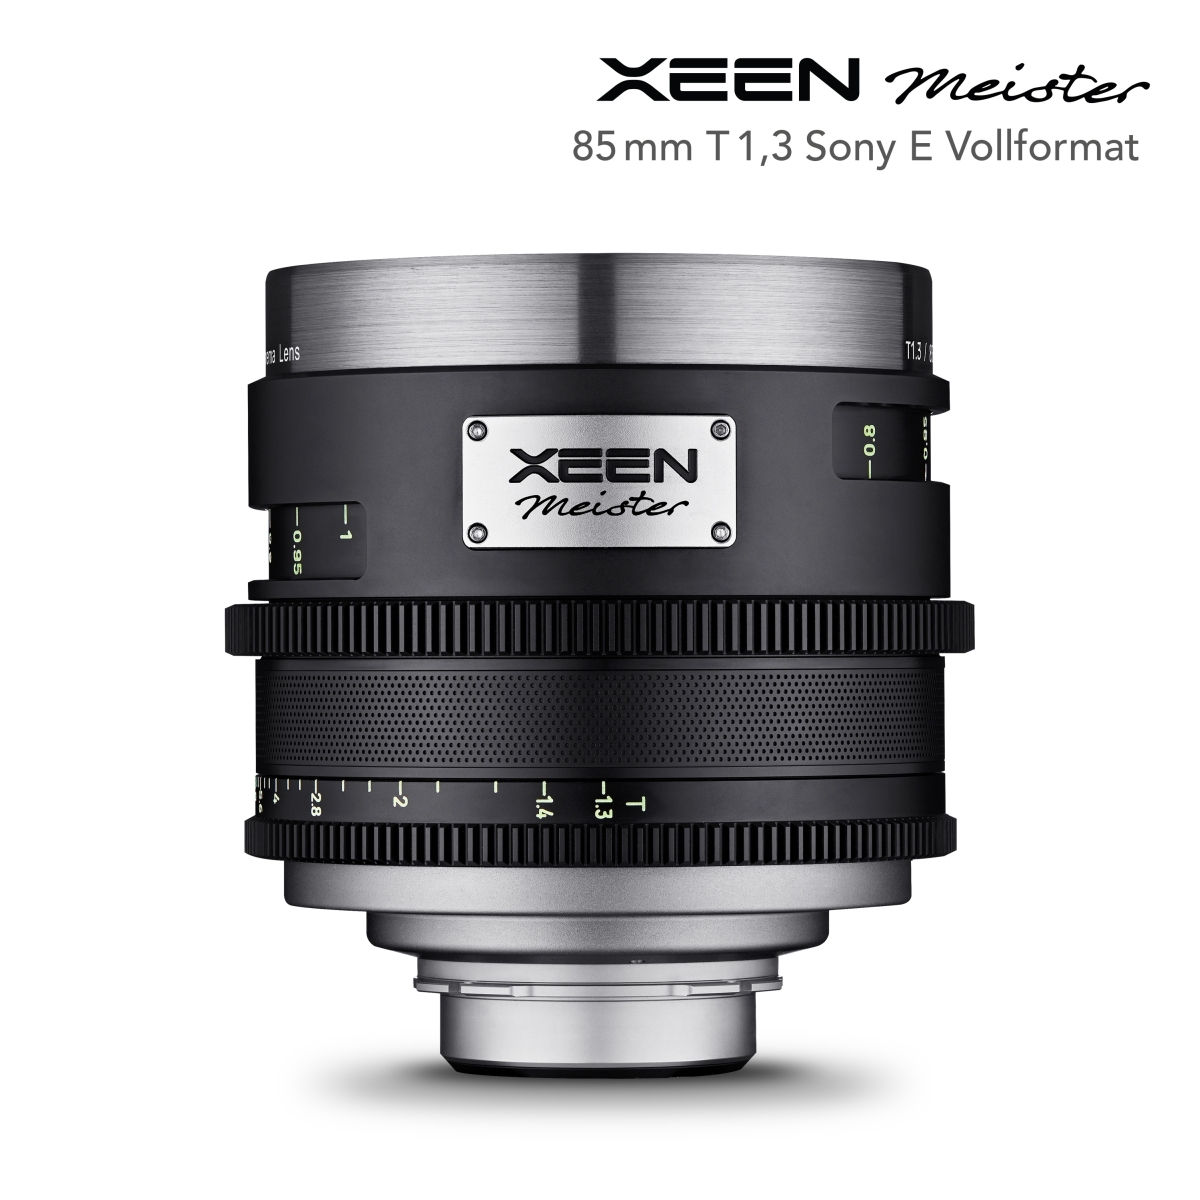 XEEN Meister 85mm T1,3 Sony E Vollformat